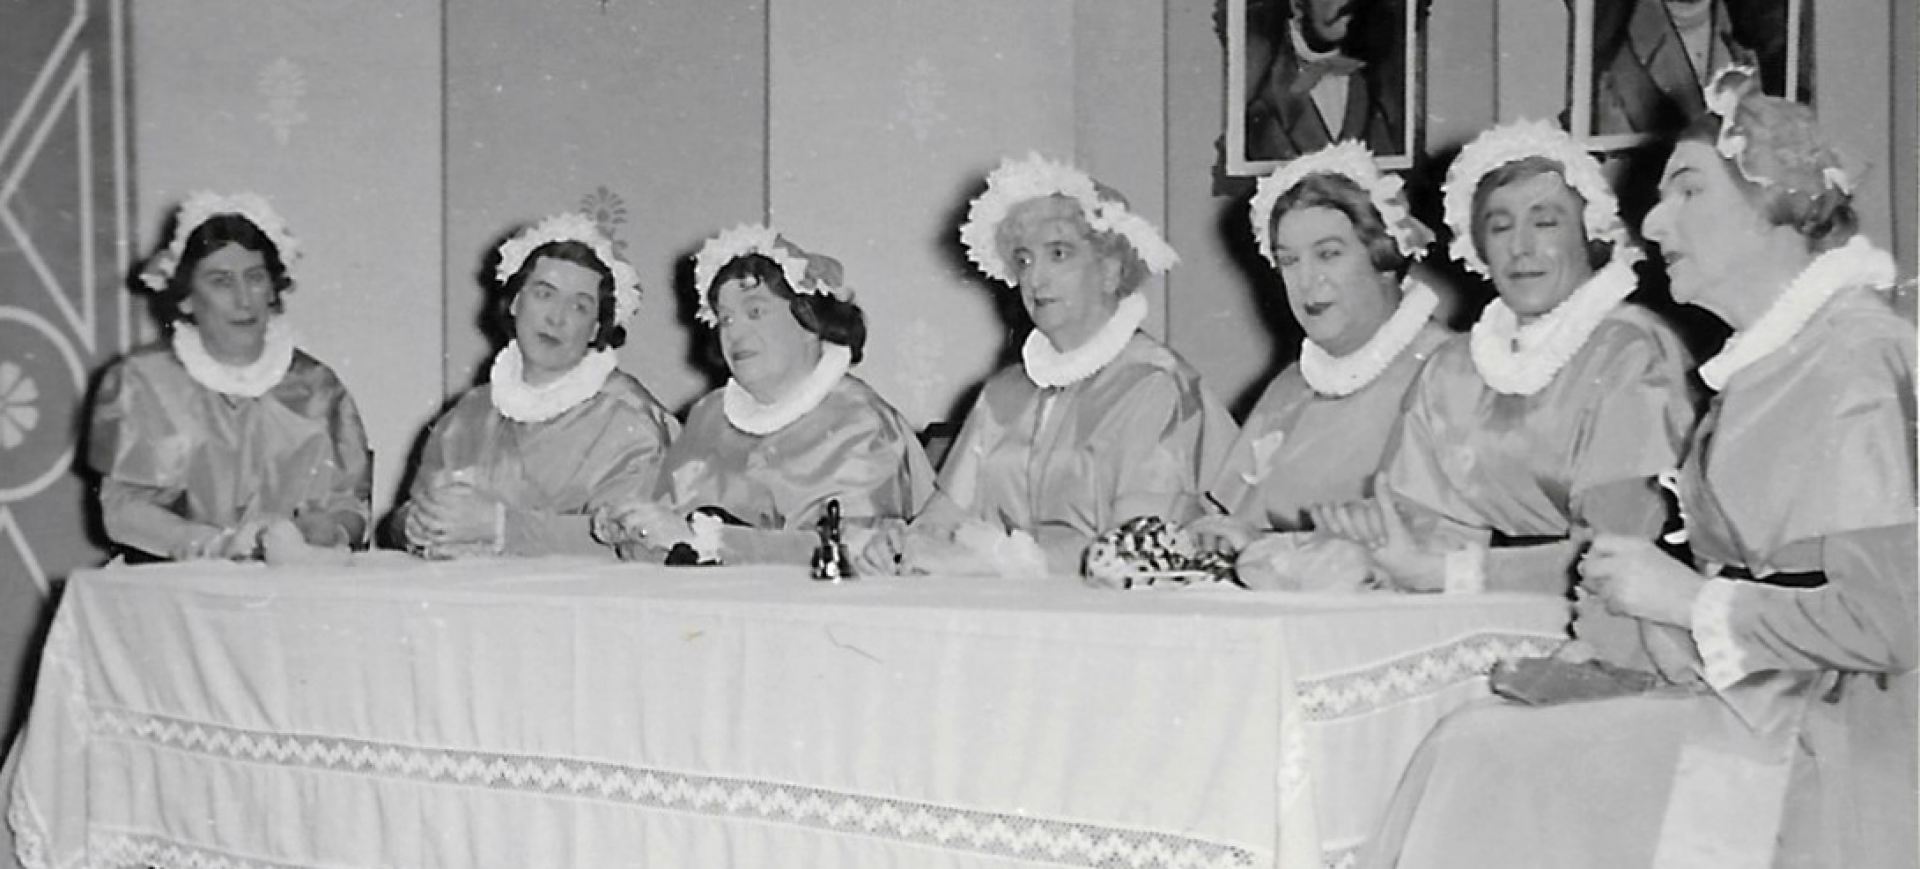 Et Weetschaffswunder - Divertissementchen 1960 - Solisten als Damenrunde am Tisch